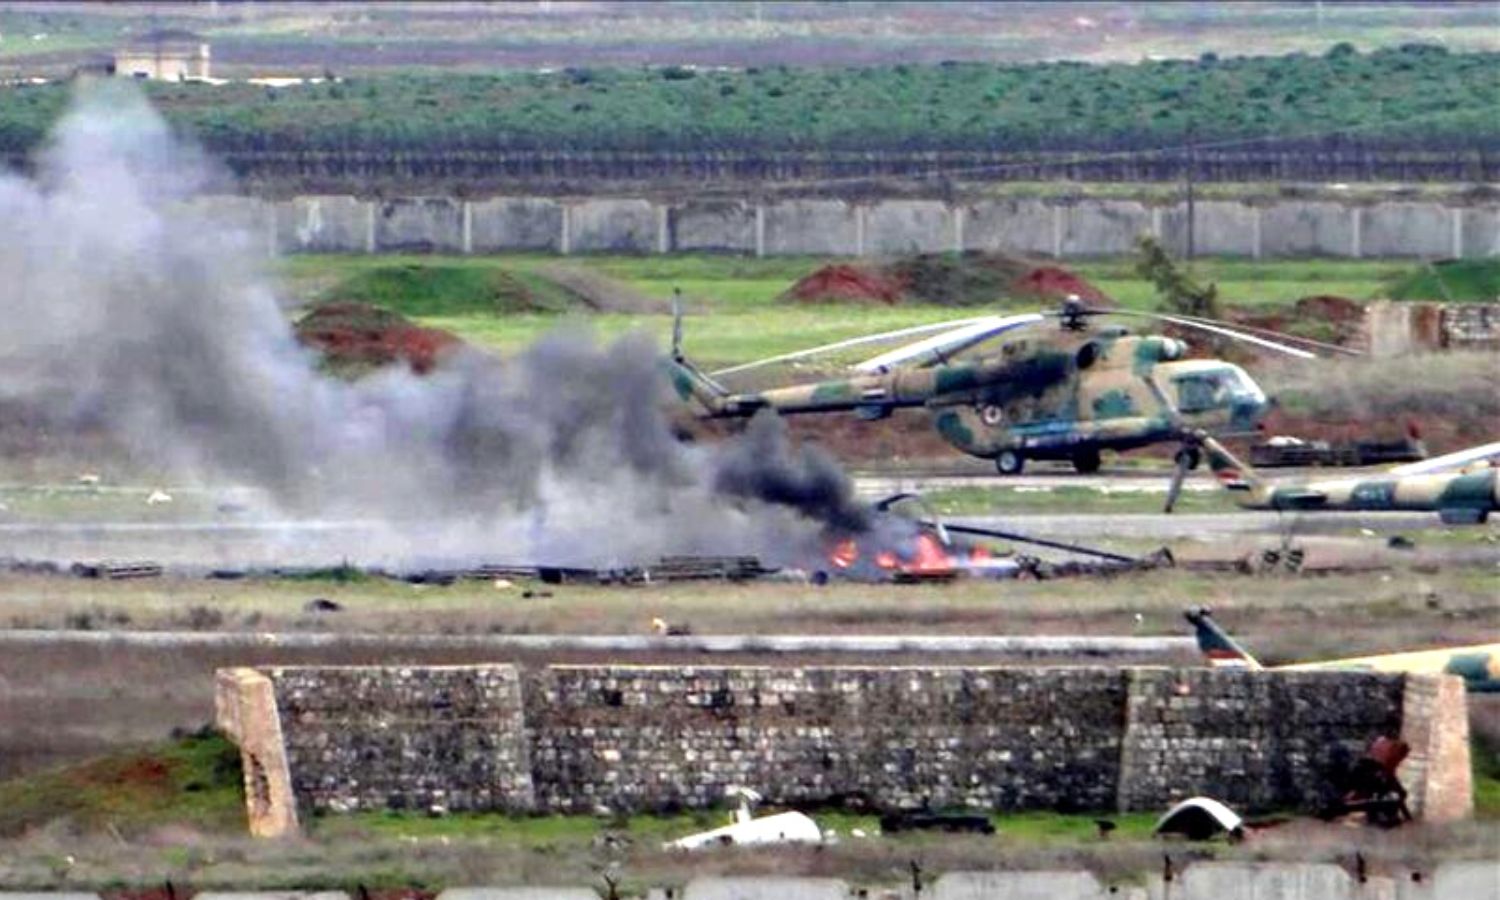 دخان يتصاعد من طائرة مروحية متضررة داخل مطار "تفتناز" العسكري بريف إدلب الشمالي الشرقي- كانون الثاني 2013 (الأناضول)